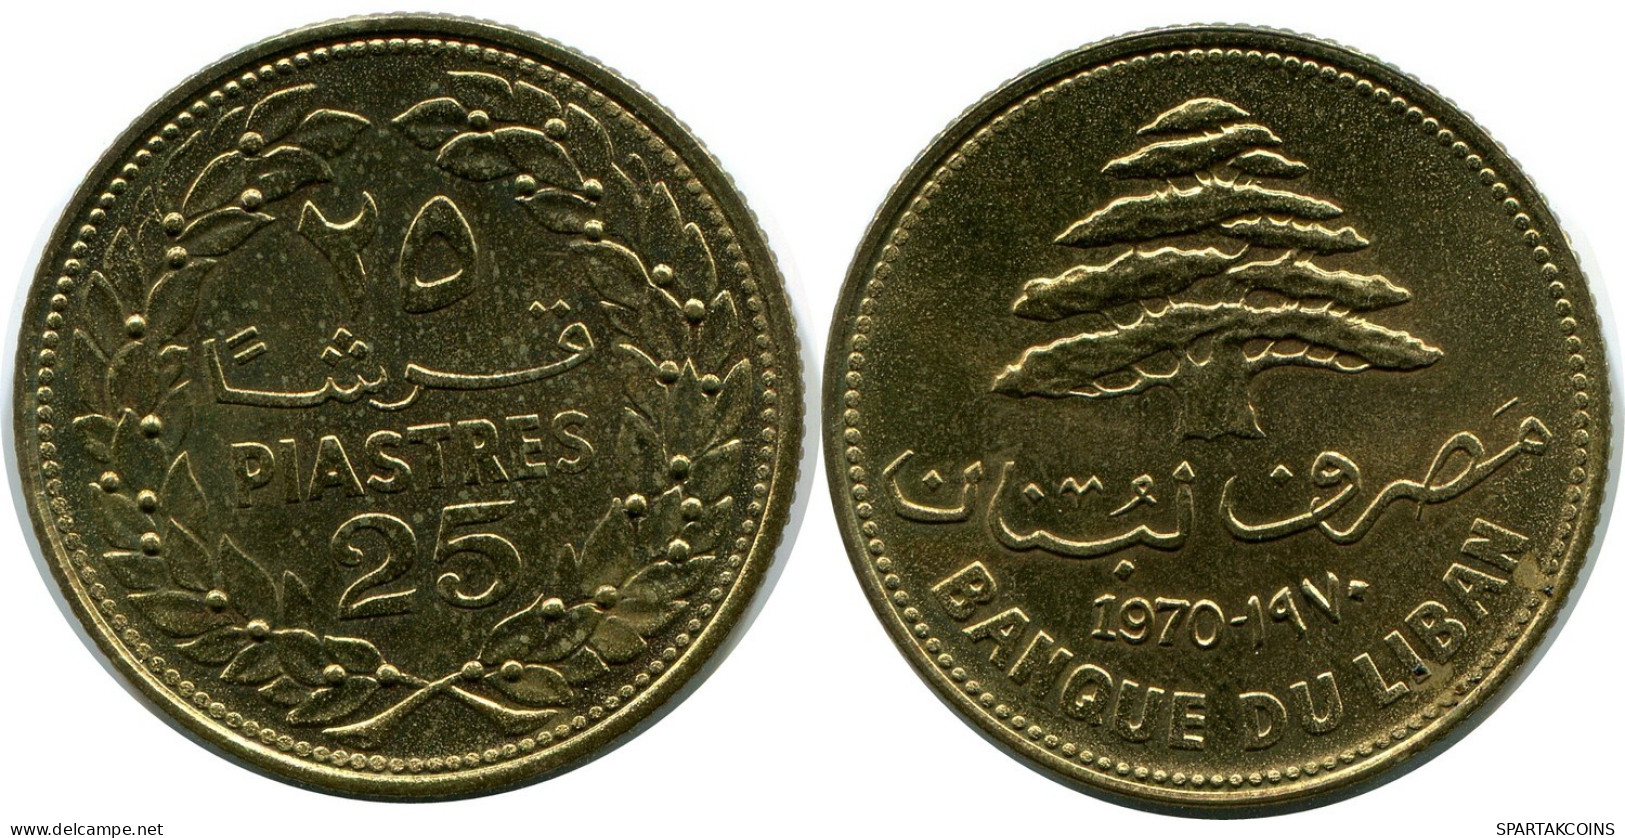 25 PIASTRES 1970 LEBANON Coin #AP385.U.A - Libanon